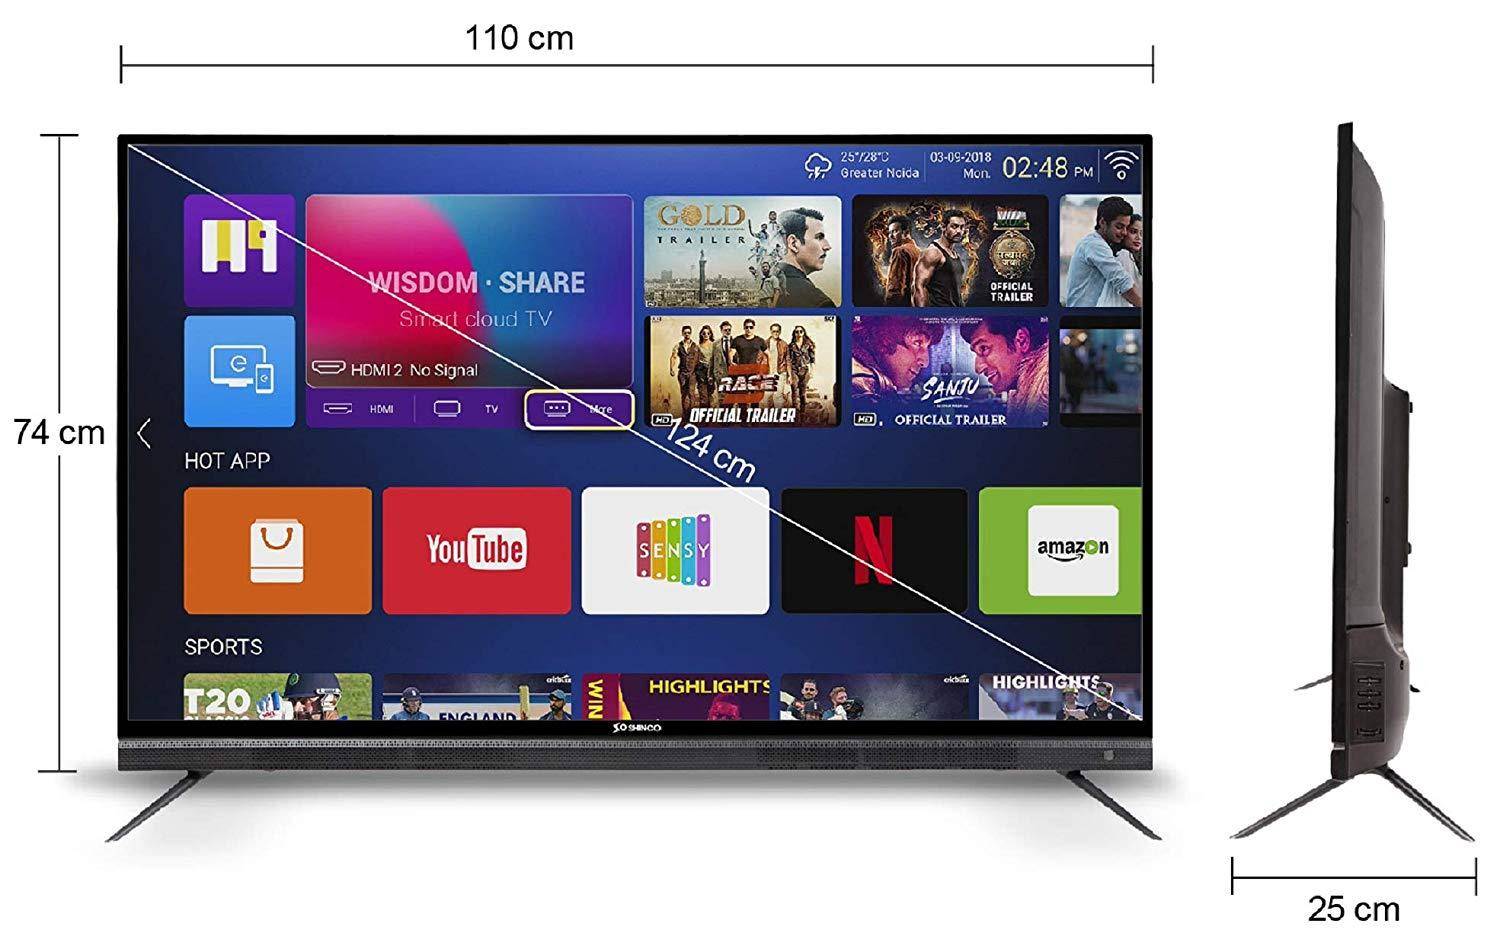 शिंको SO50AS-E50 49-इंच फुल-एचडी स्मार्ट एलईडी टीवी भारत में लॉन्च